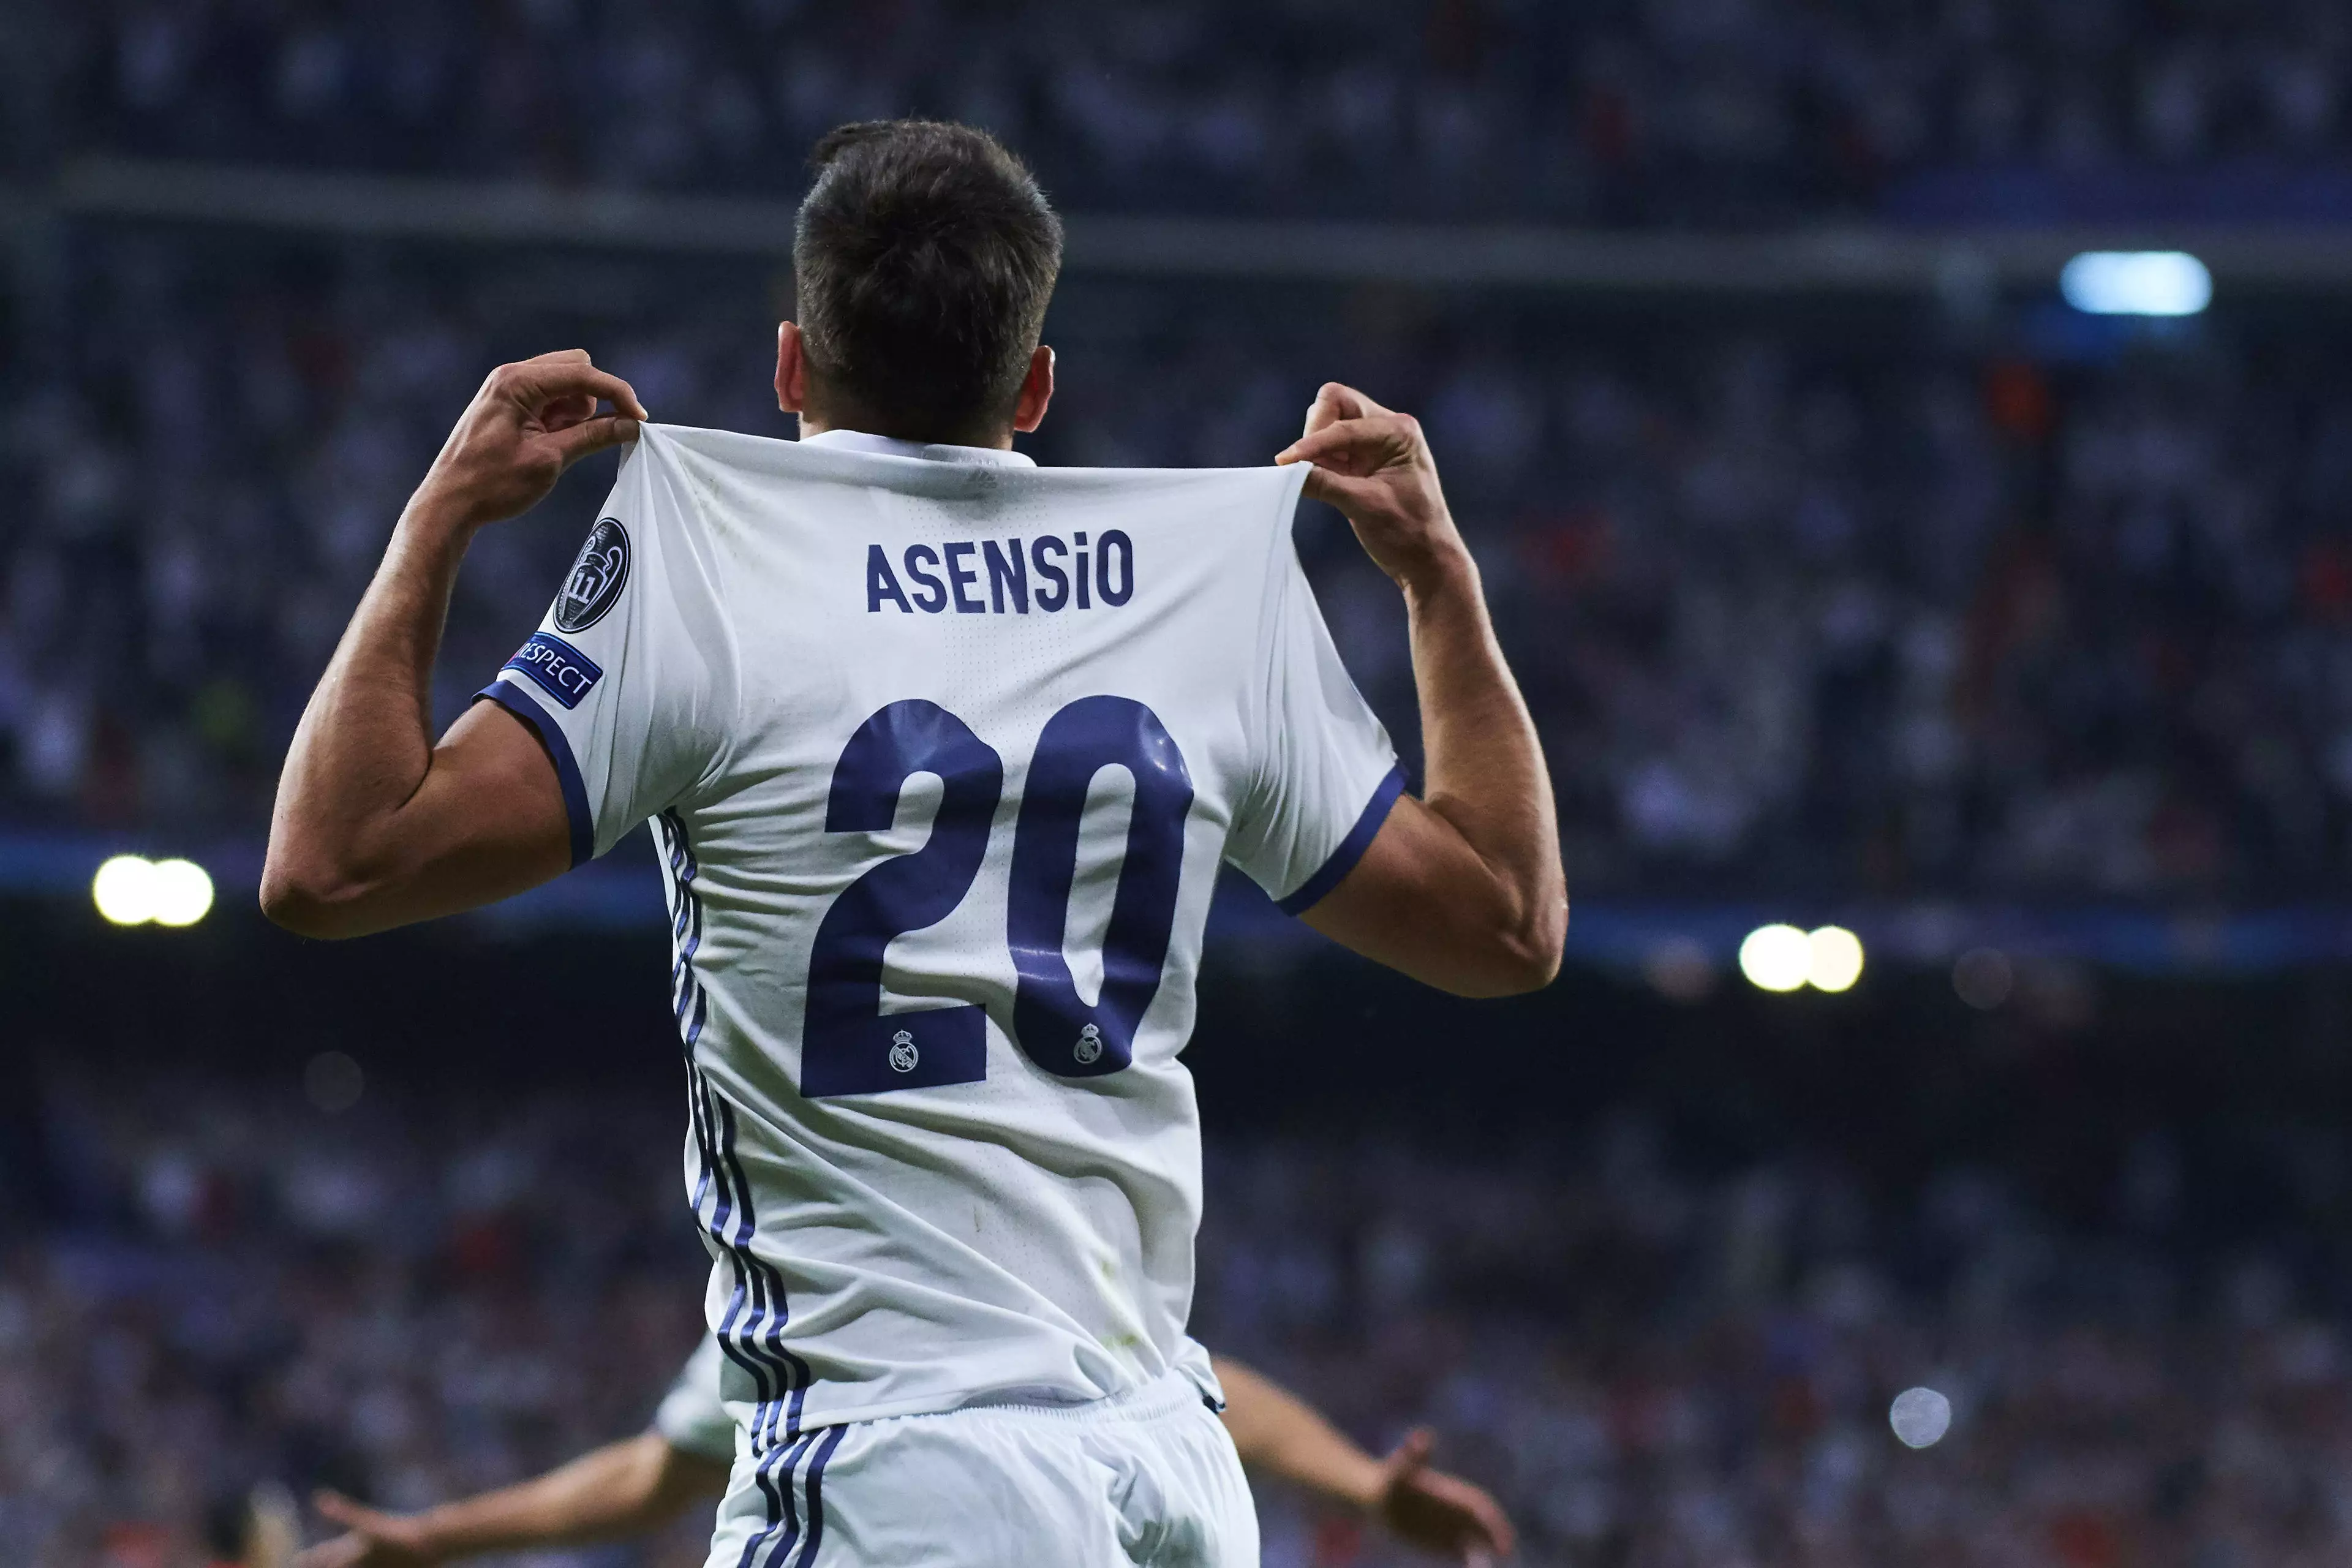 Asensio celebrates scoring. Image: PA